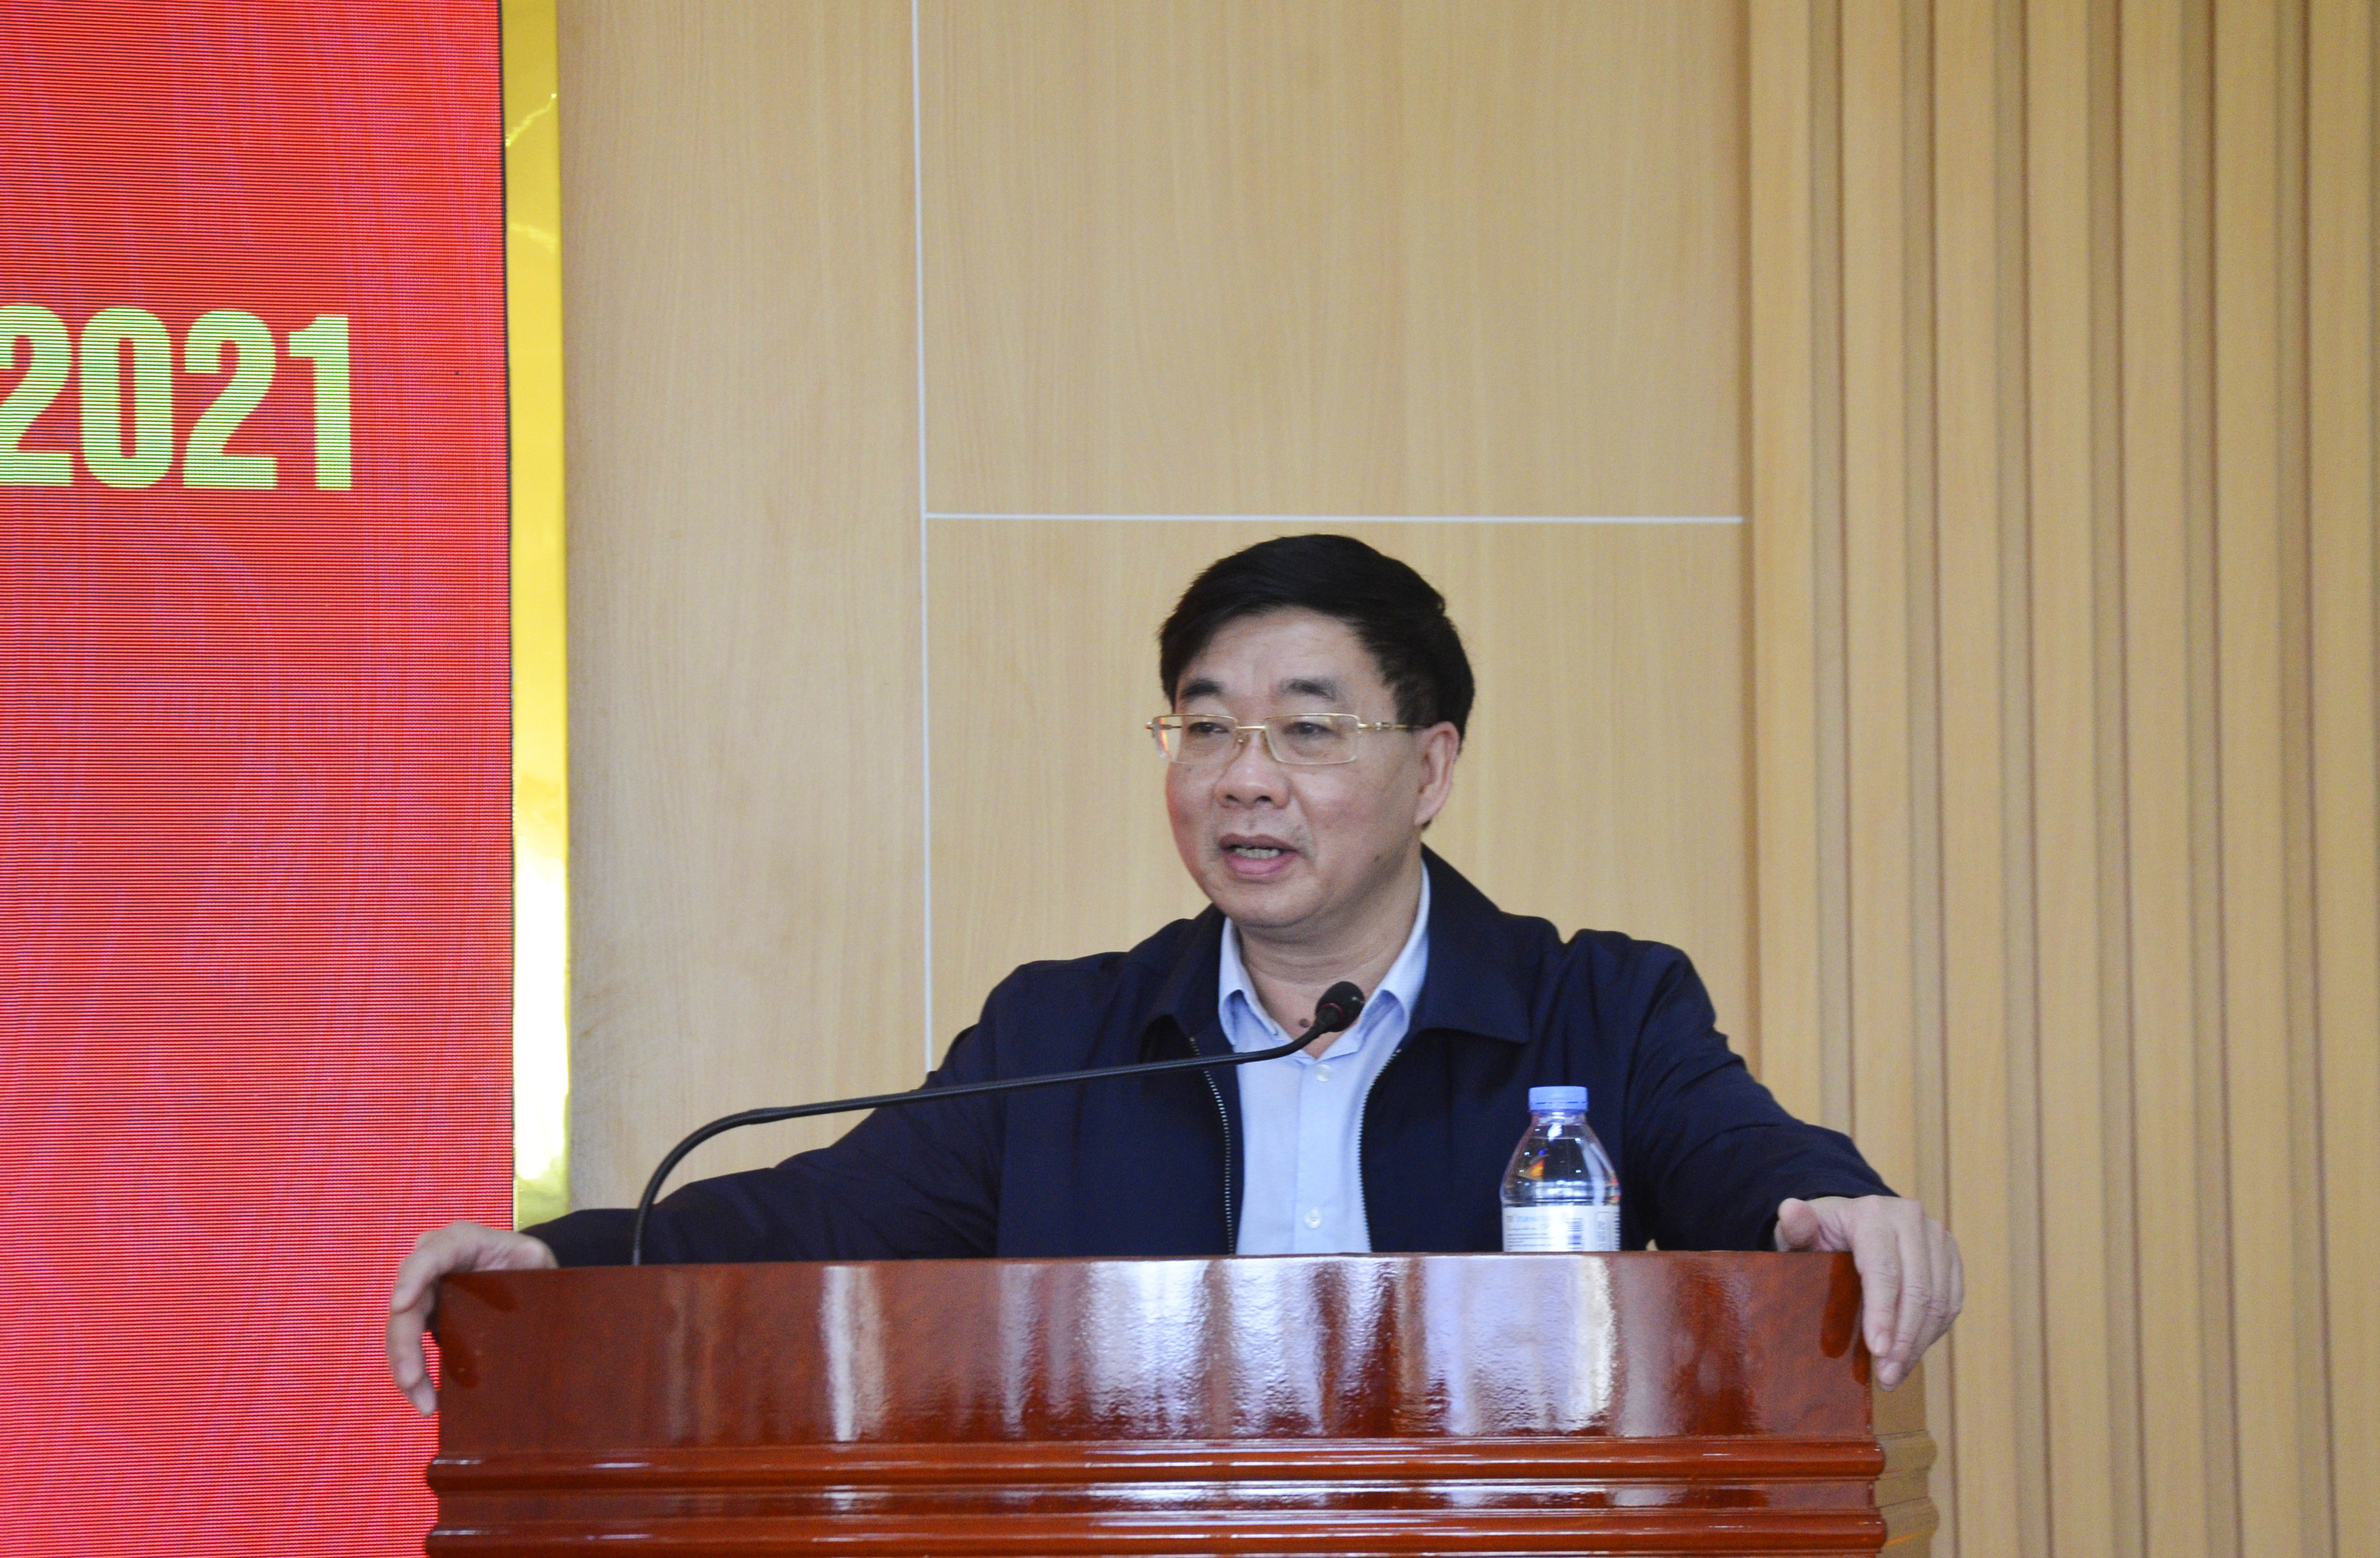 Đồng chí Nguyễn Văn Thông - Phó Bí thư Thường trực Tỉnh ủy phát biểu chỉ đạo tại hội nghị. Ảnh: Thanh Lê